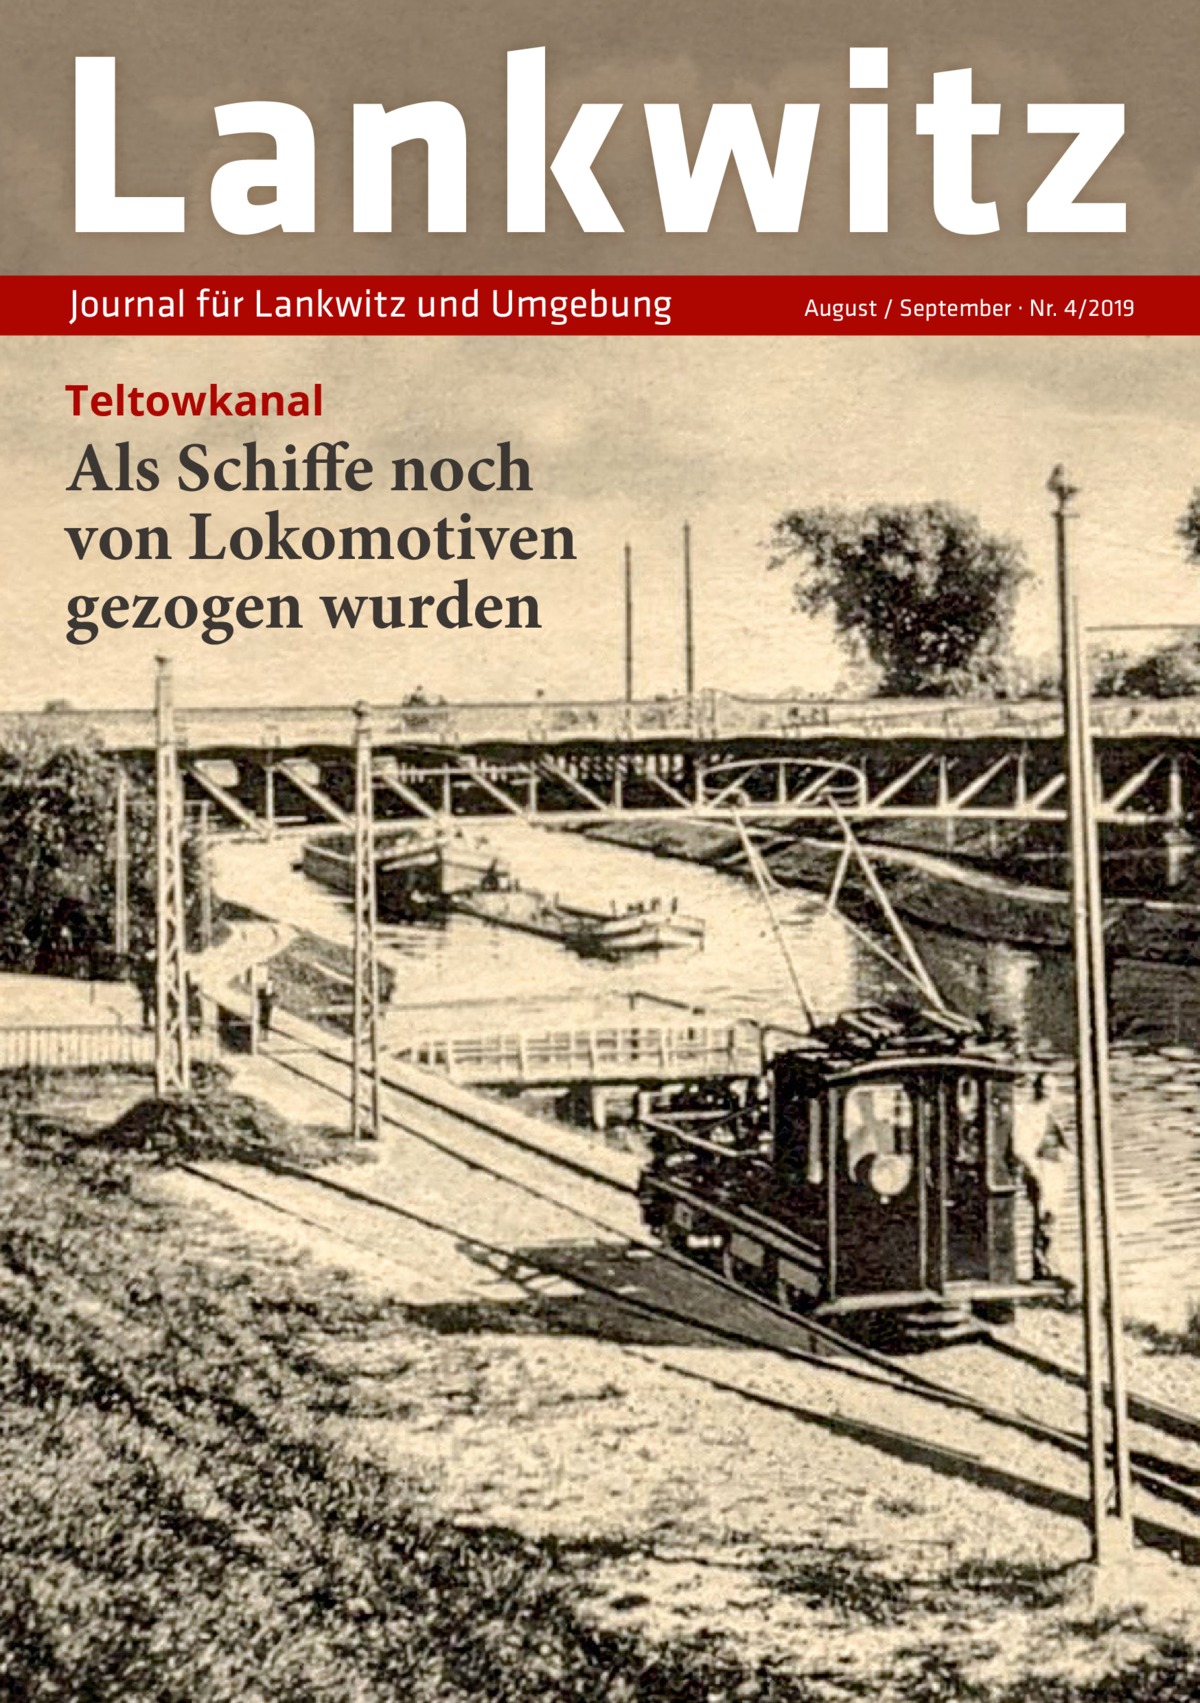 Lankwitz Journal für Lankwitz und Umgebung  Teltowkanal  Als Schiffe noch von Lokomotiven gezogen wurden  August / September · Nr. 4/2019